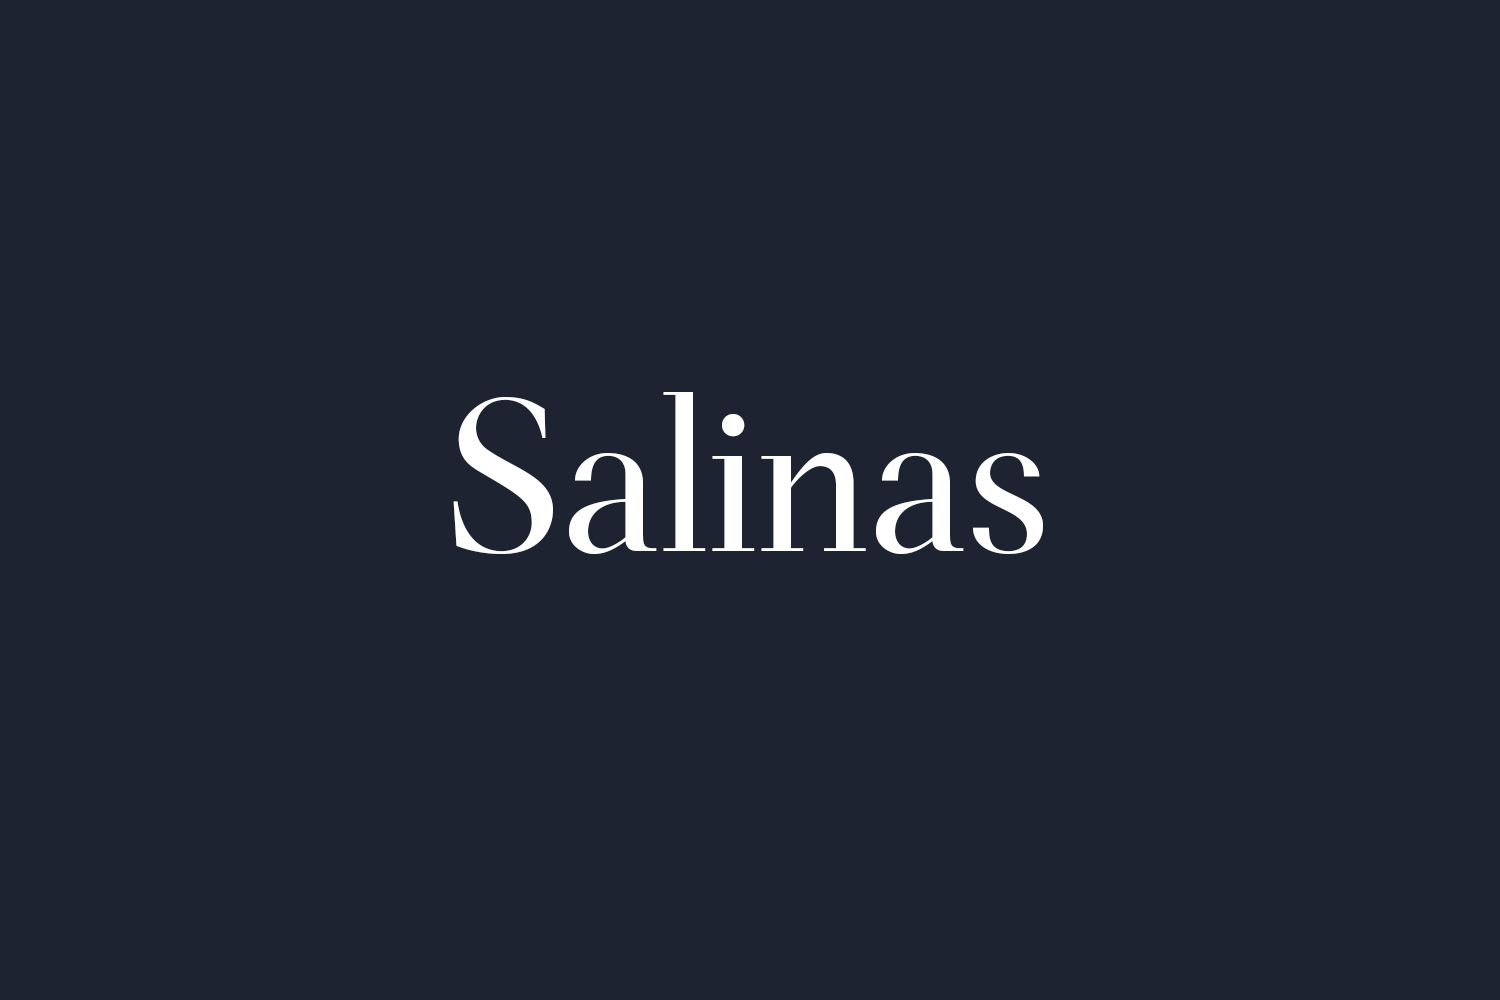 Salinas Free Font